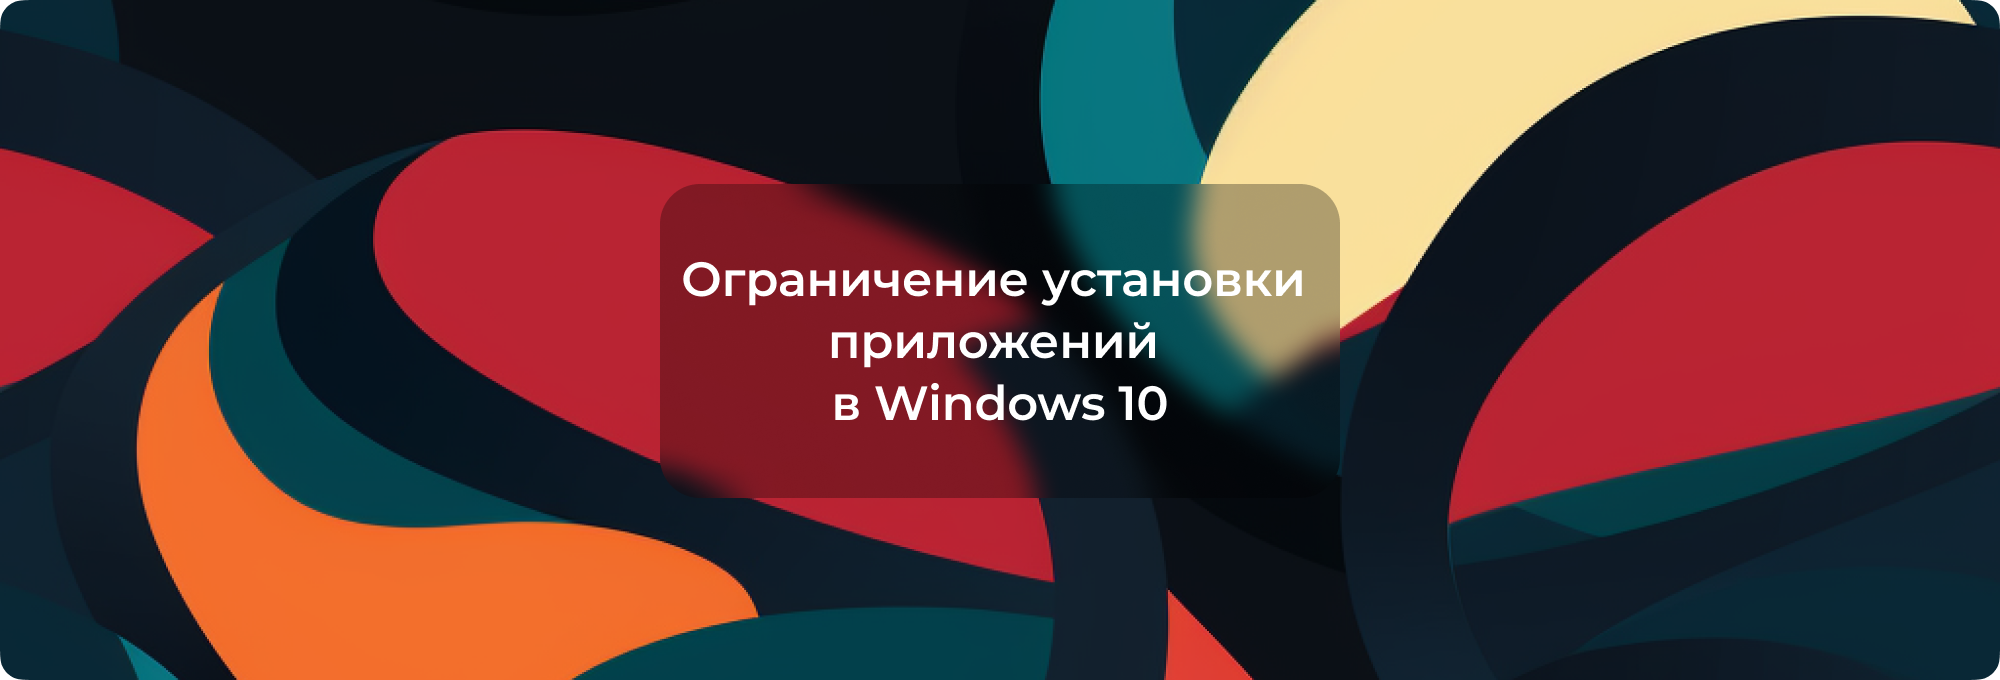 Ограничение установки приложений в Windows 10: как разрешить только приложения из магазина